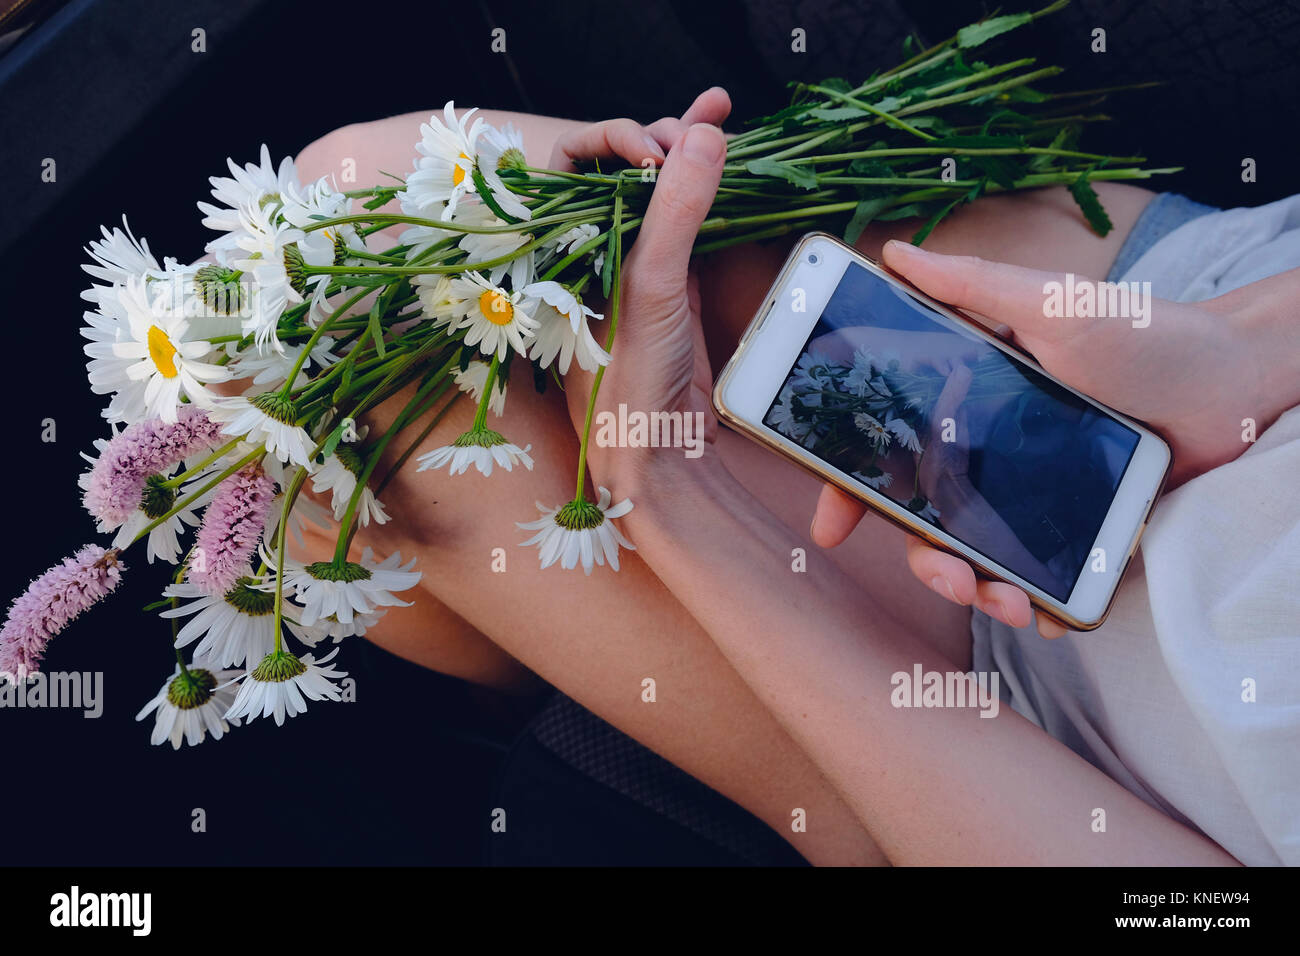 Mujer sosteniendo flores frescas, tomando la fotografía de flores, utilizando el smartphone, close-up Foto de stock